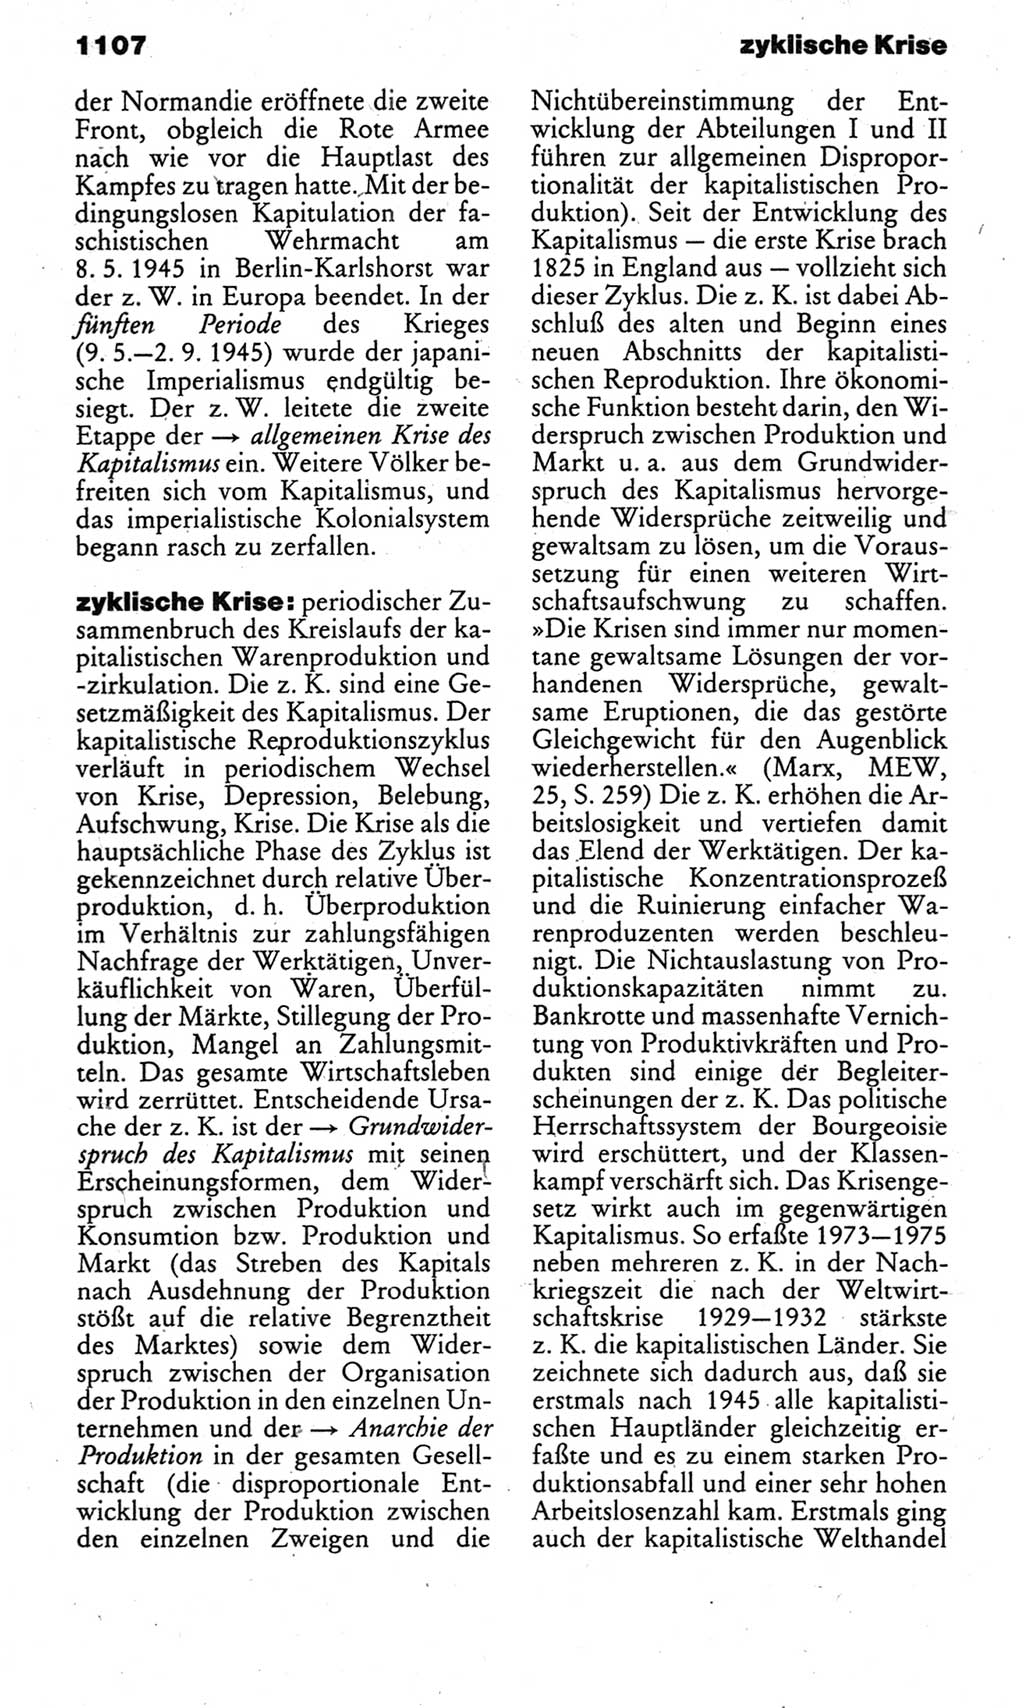 Kleines politisches Wörterbuch [Deutsche Demokratische Republik (DDR)] 1983, Seite 1107 (Kl. pol. Wb. DDR 1983, S. 1107)